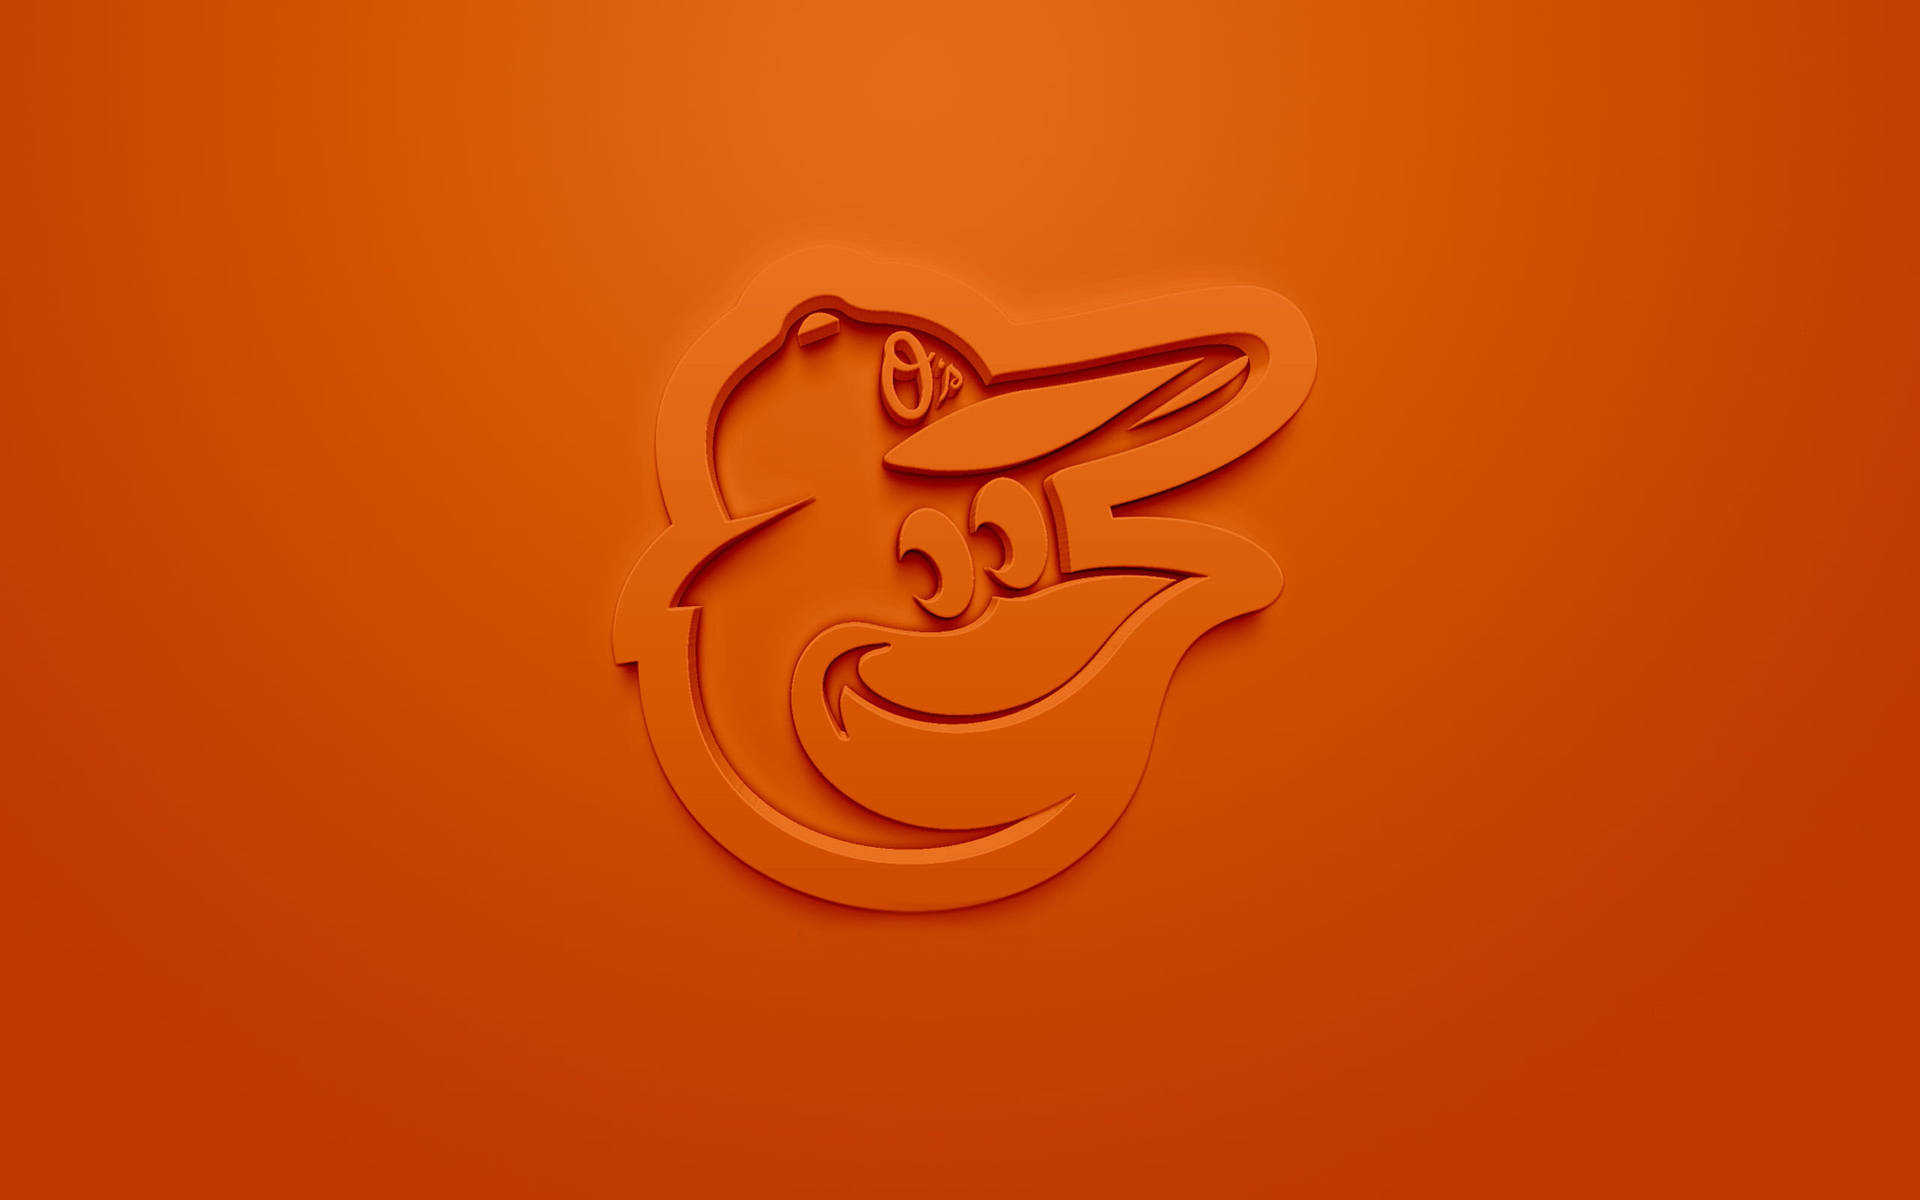 Estéticanaranja Del Emblema De Los Baltimore Orioles Fondo de pantalla